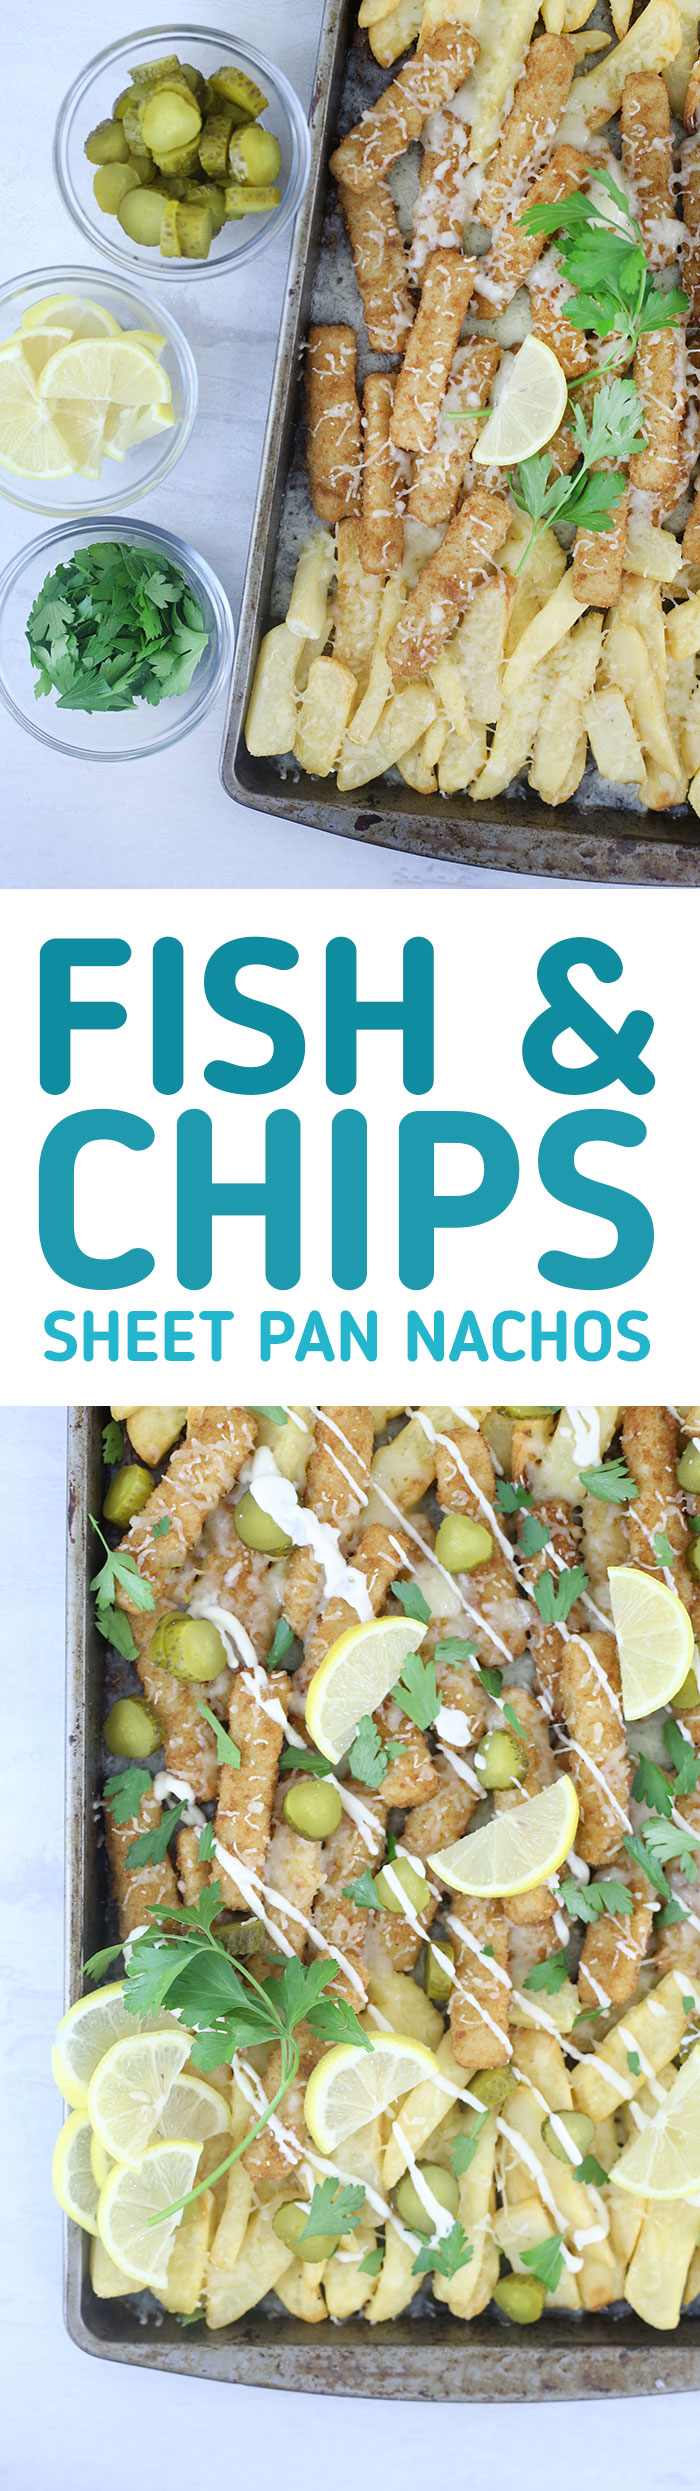 fish & chips sheet pan “nachos”